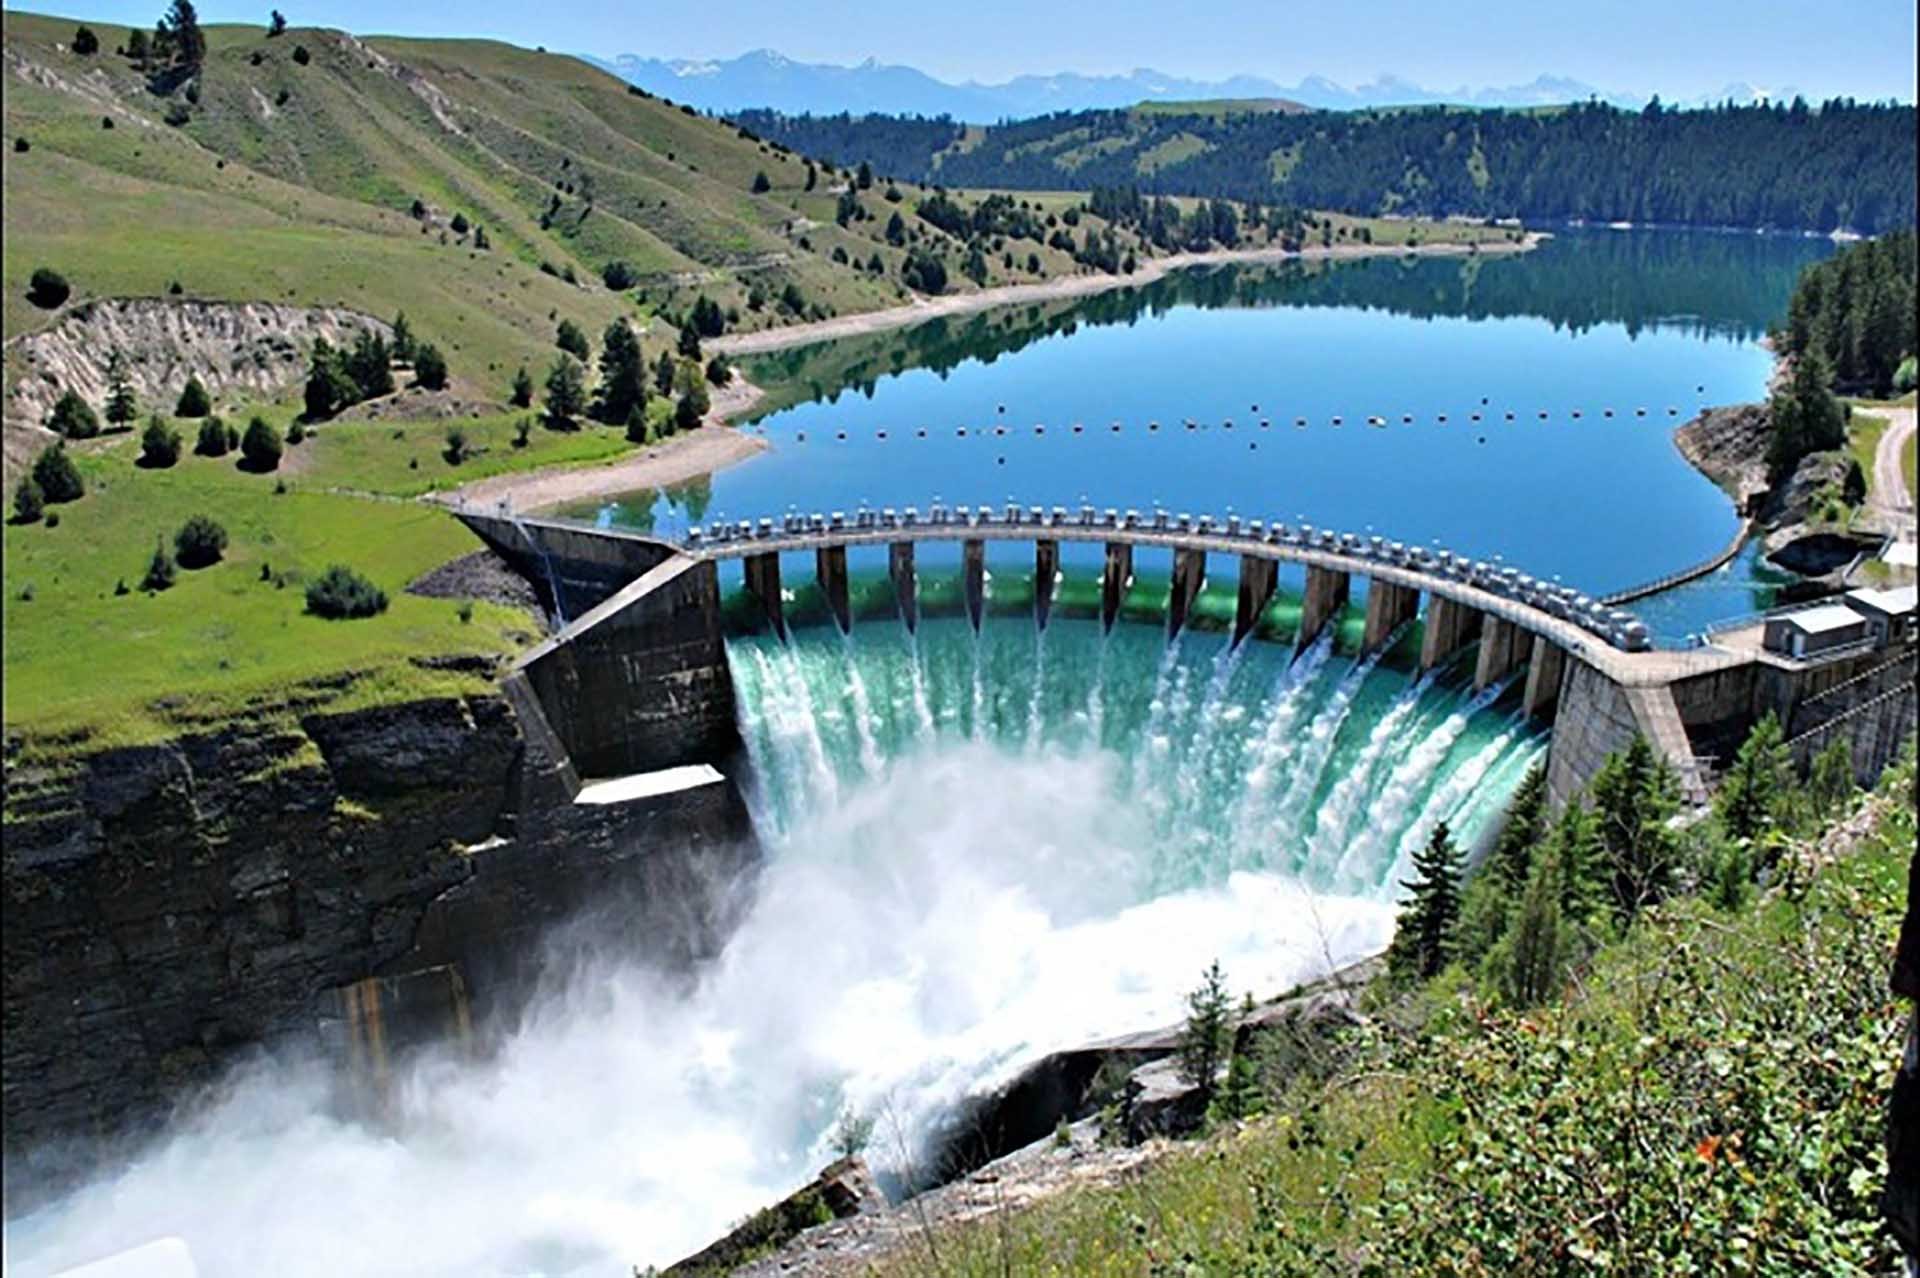 Kỷ lục của nhà máy thủy điện Trung Quốc lớn thứ 2 thế giới sau đập Tam Hiệp